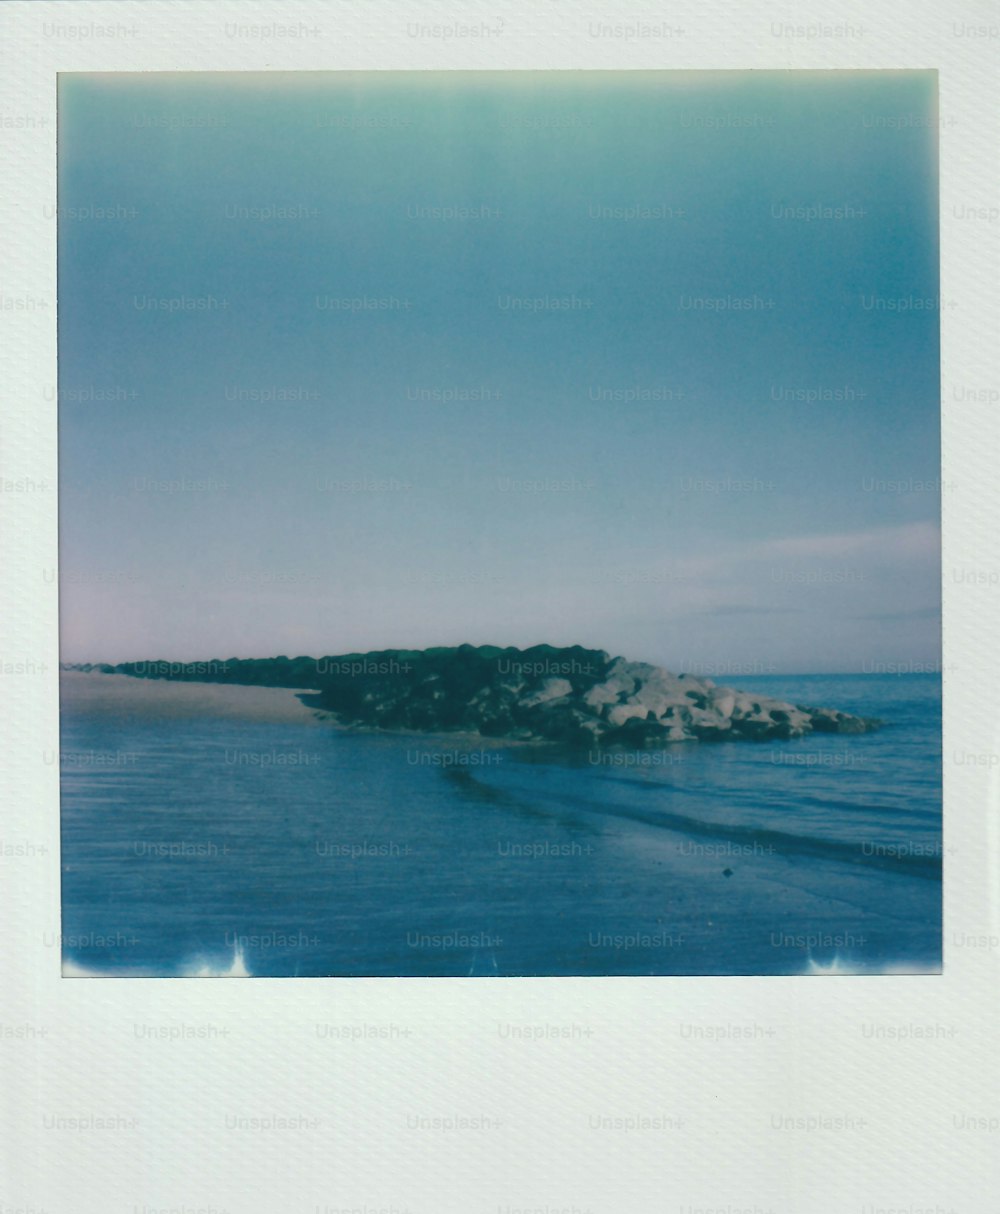 a polaroid photo of a beach with a rock outcropping